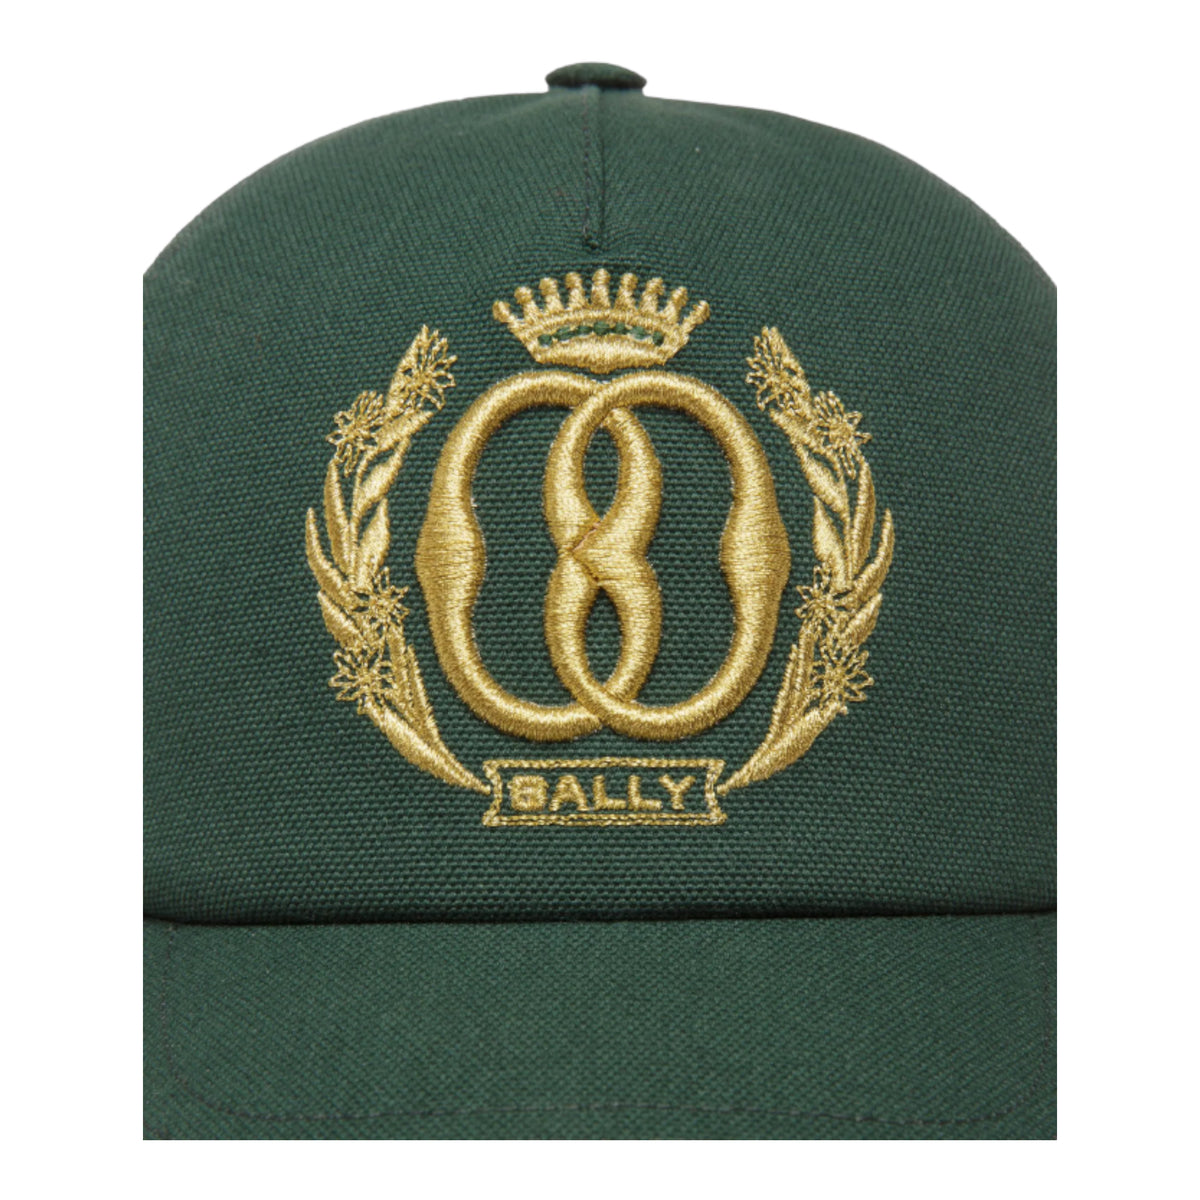 Bally Emblem Baseball Cap